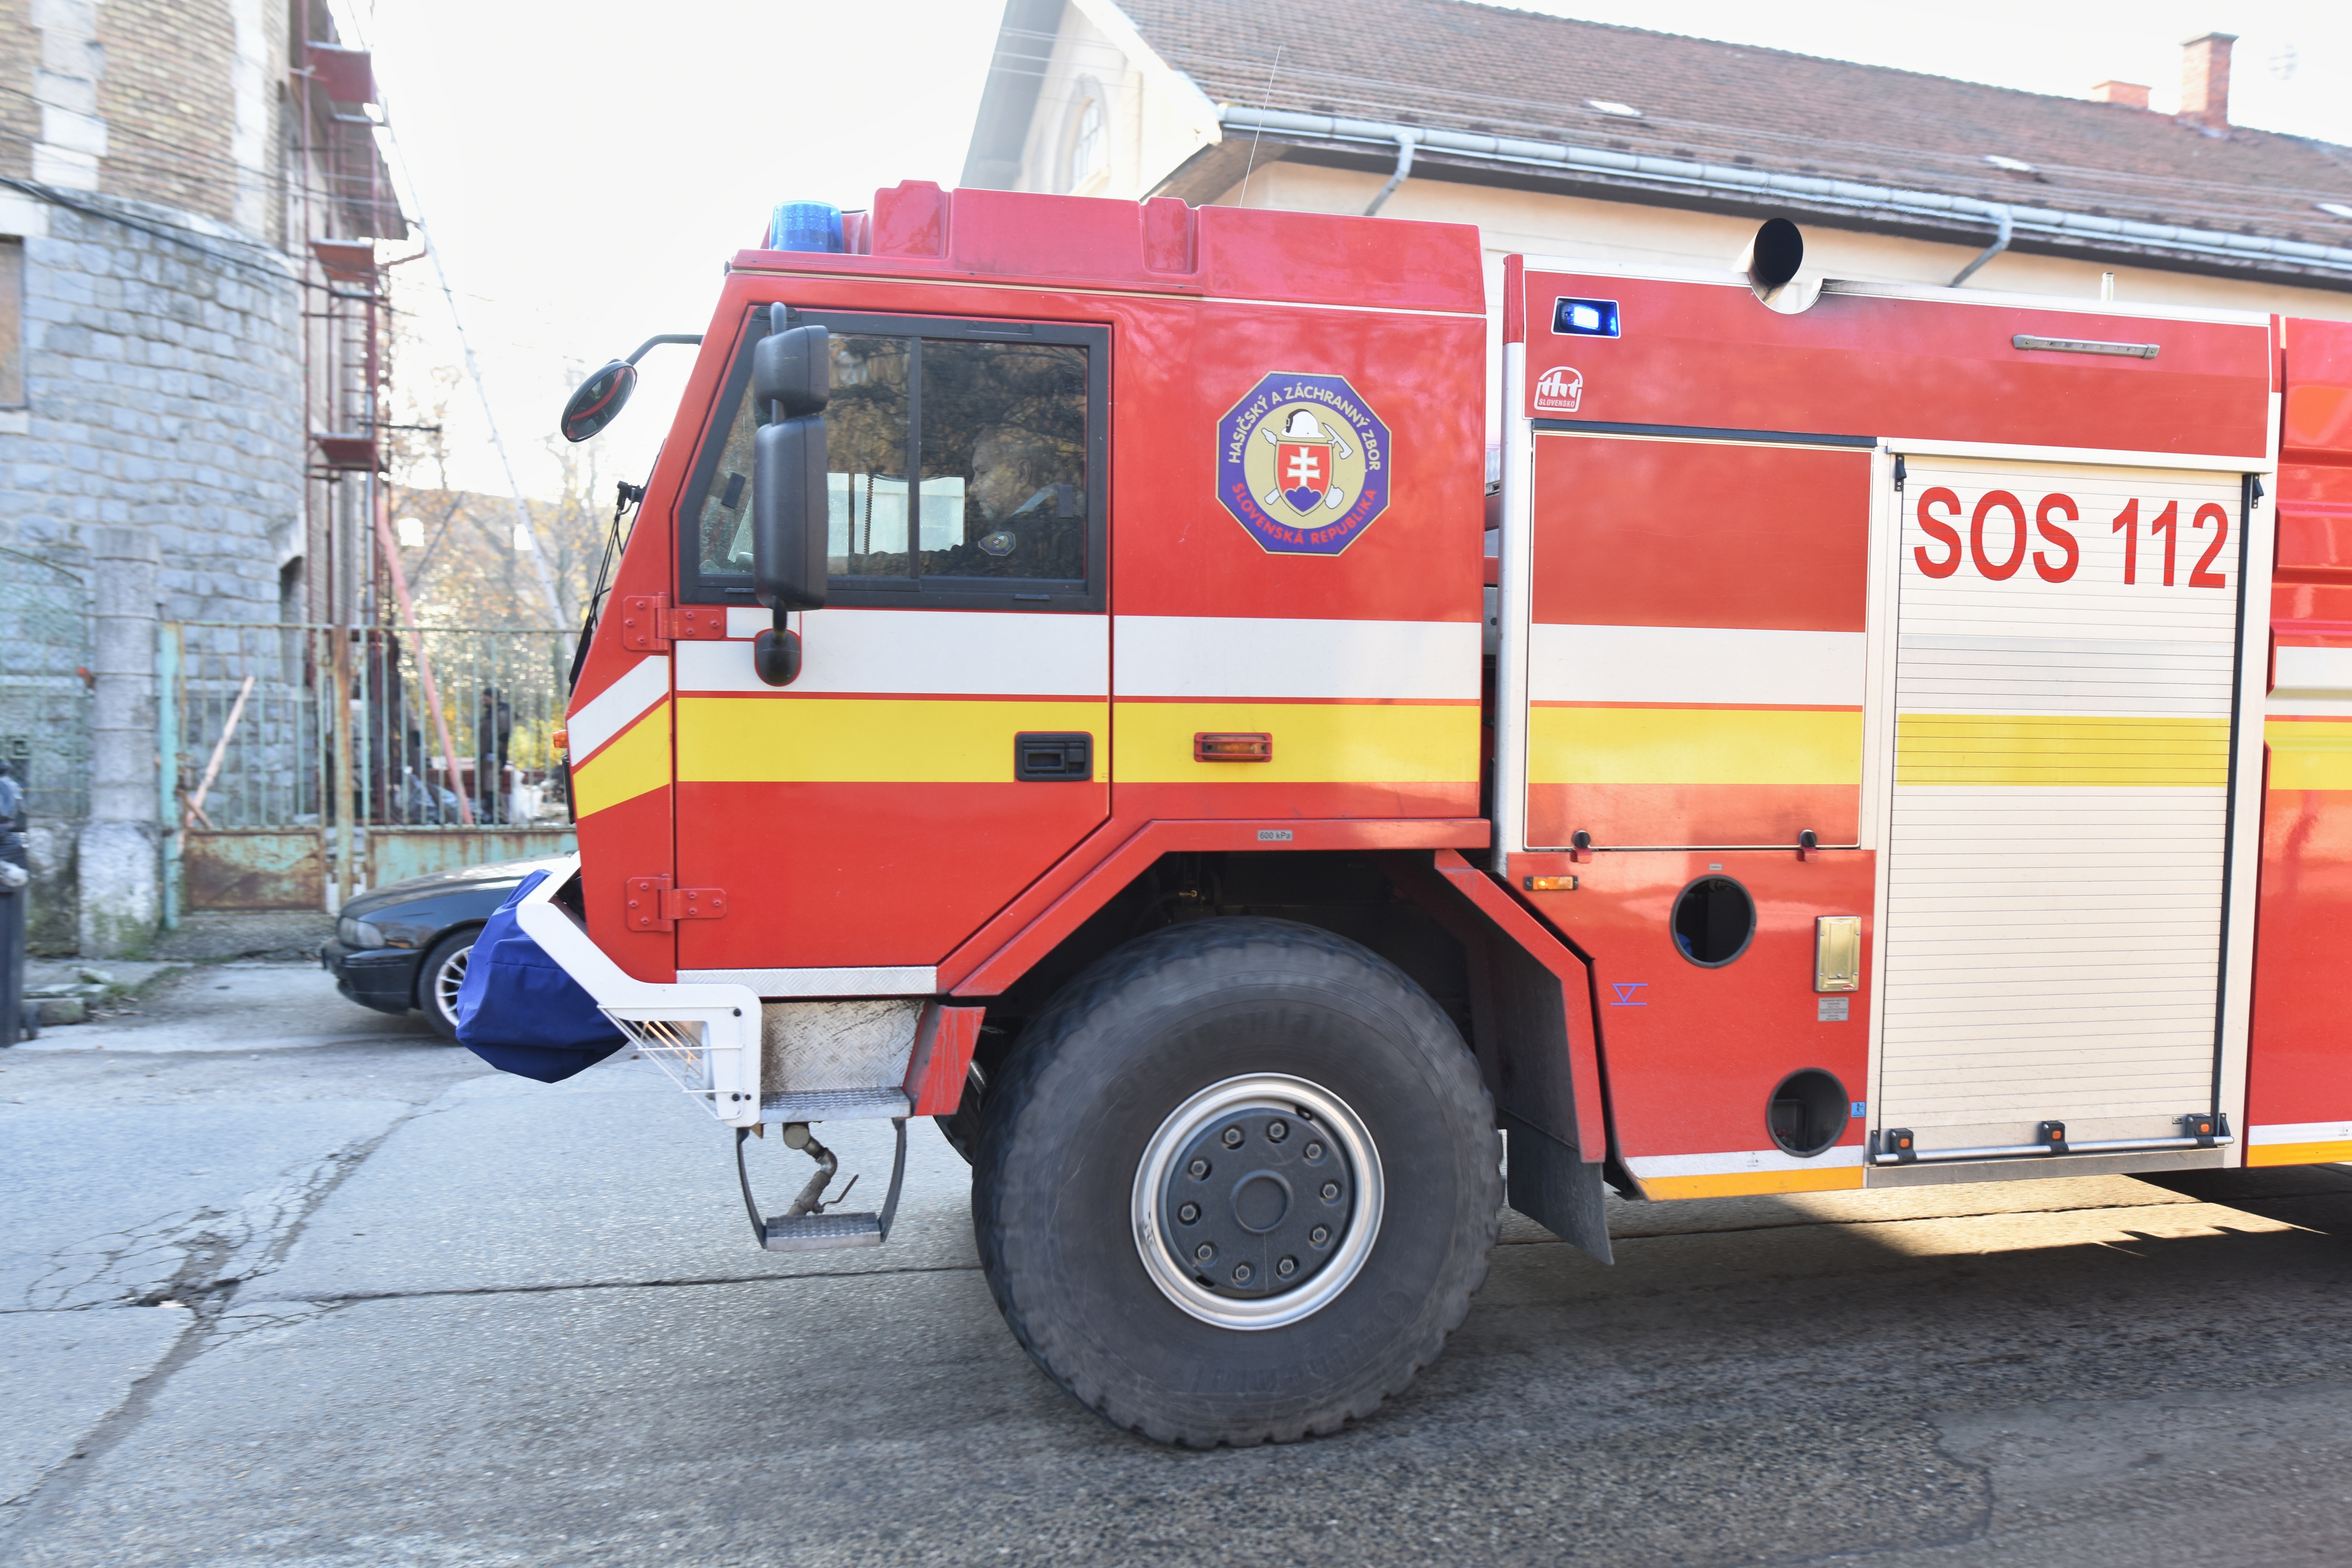 Lángoló farakáshoz riasztották a tűzoltókat Somorján